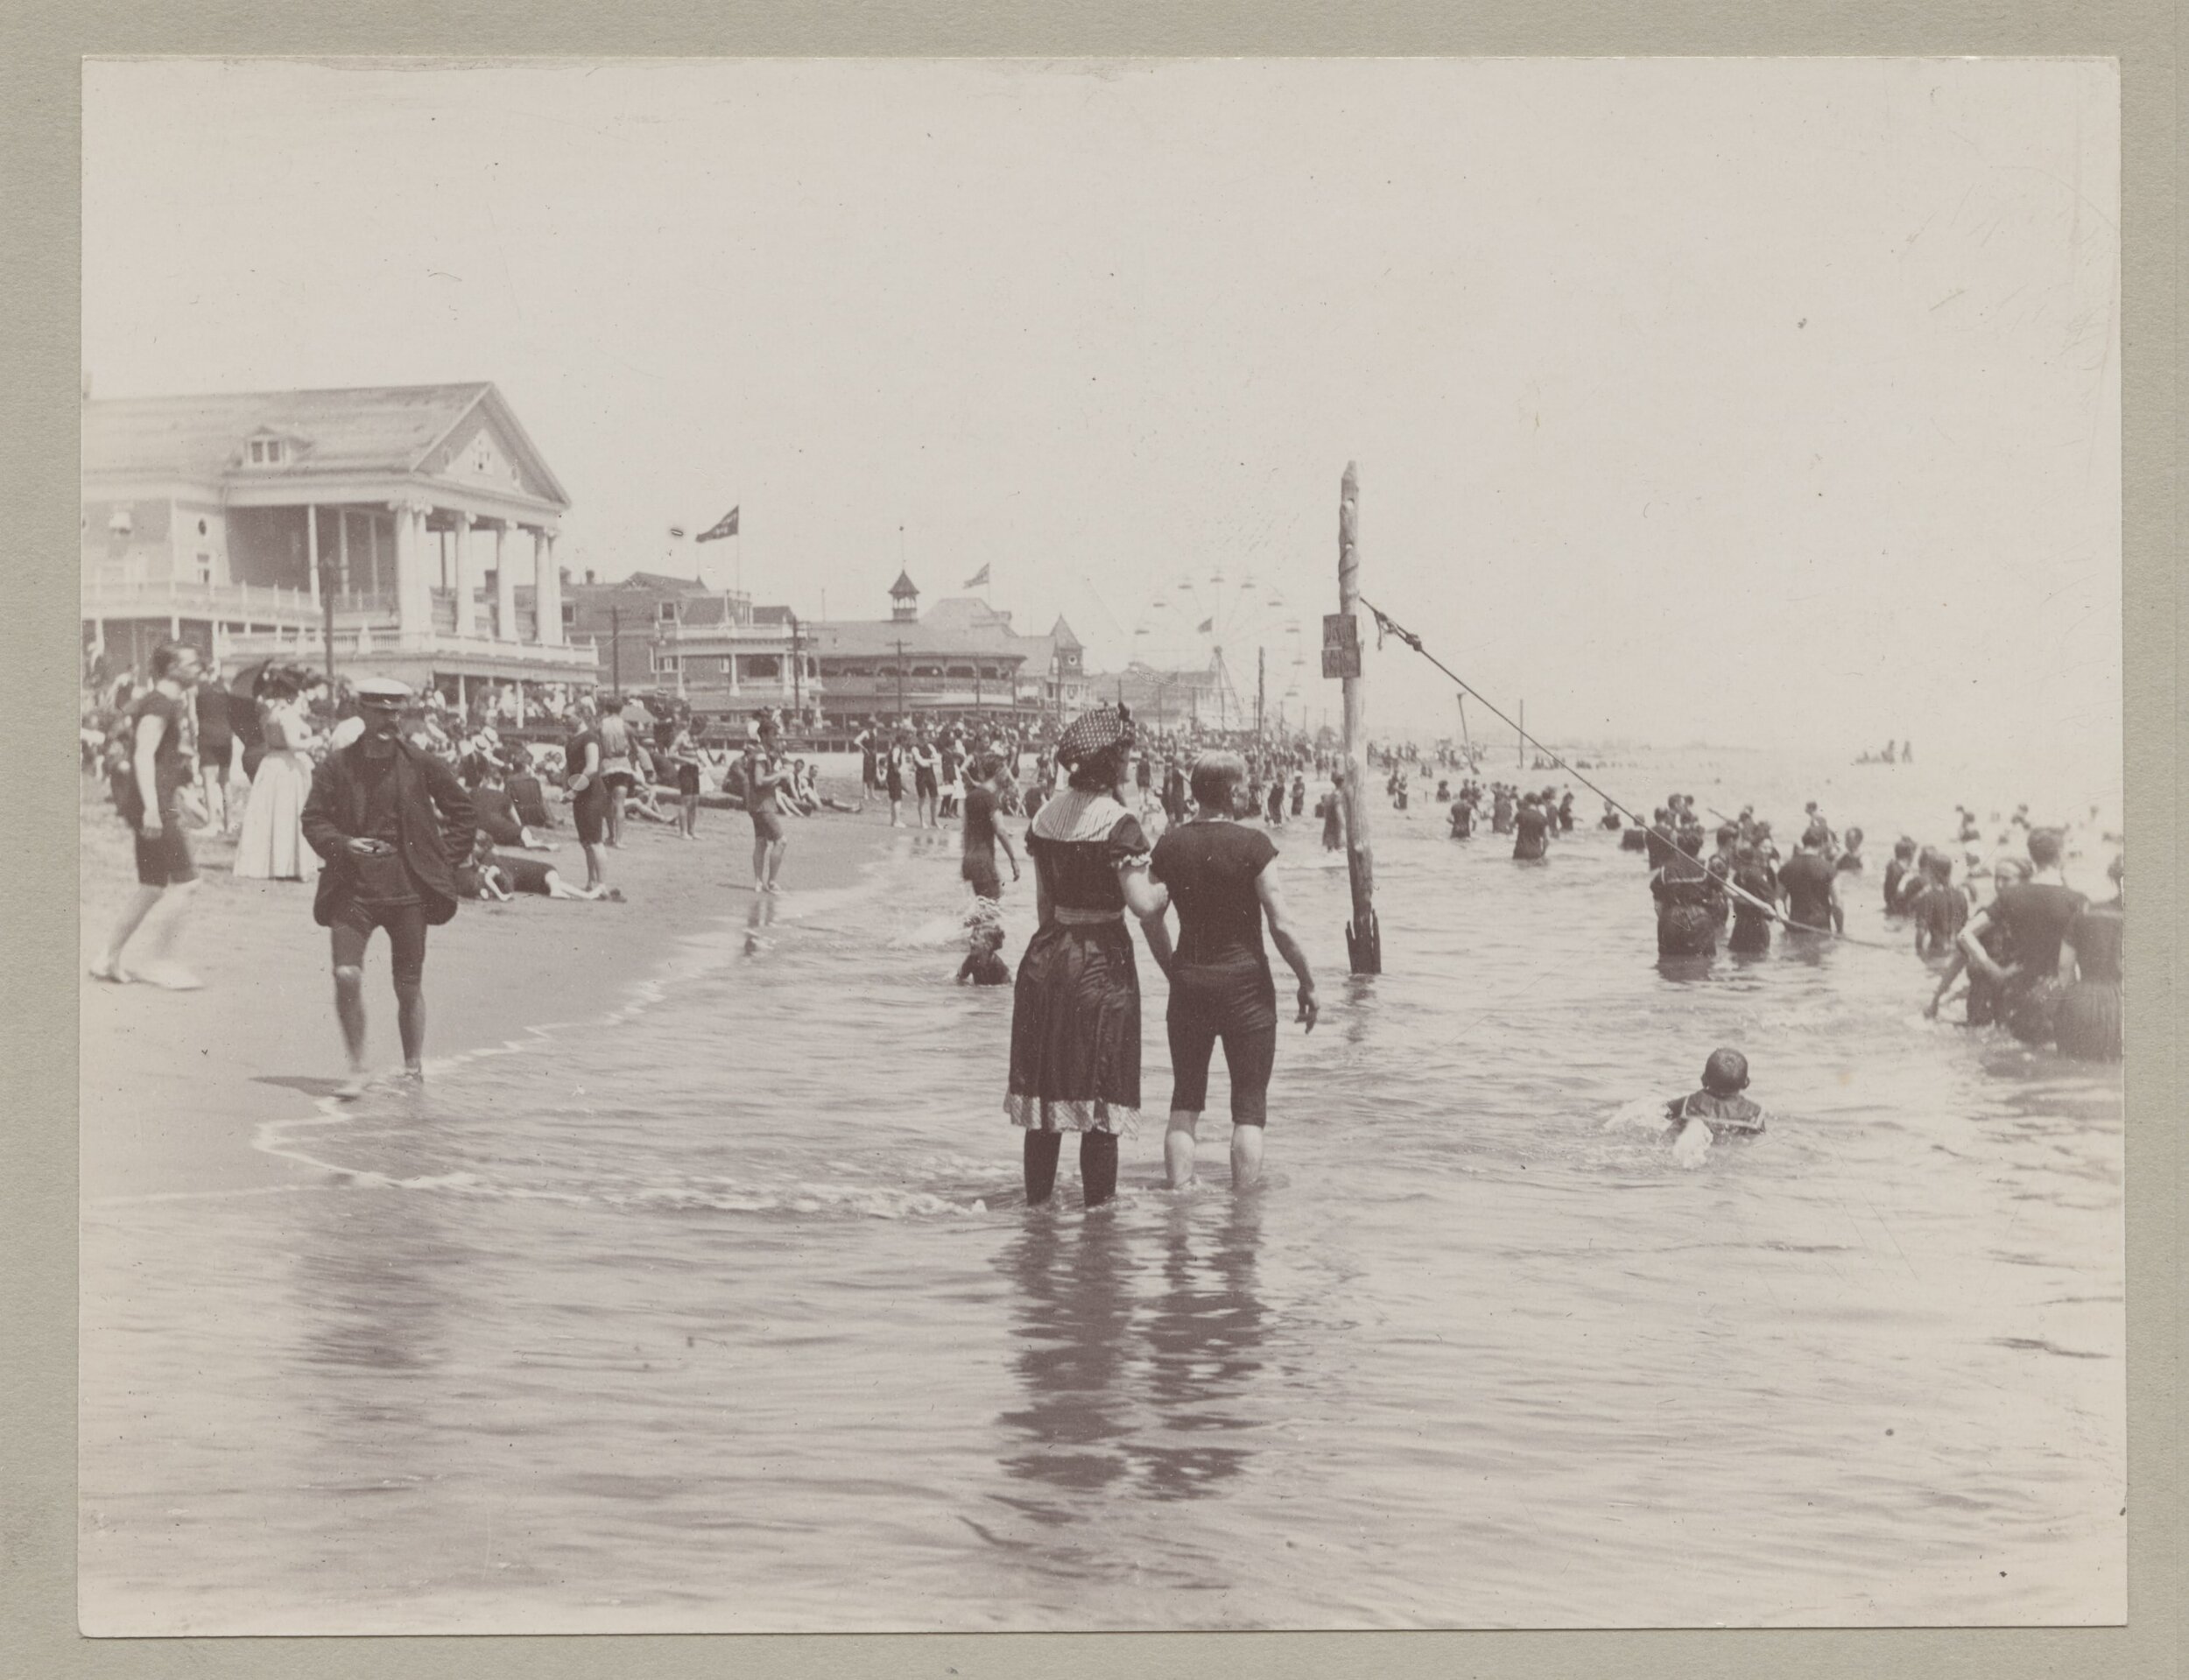  Midland Beach, Staten Island, ca. 1910. 